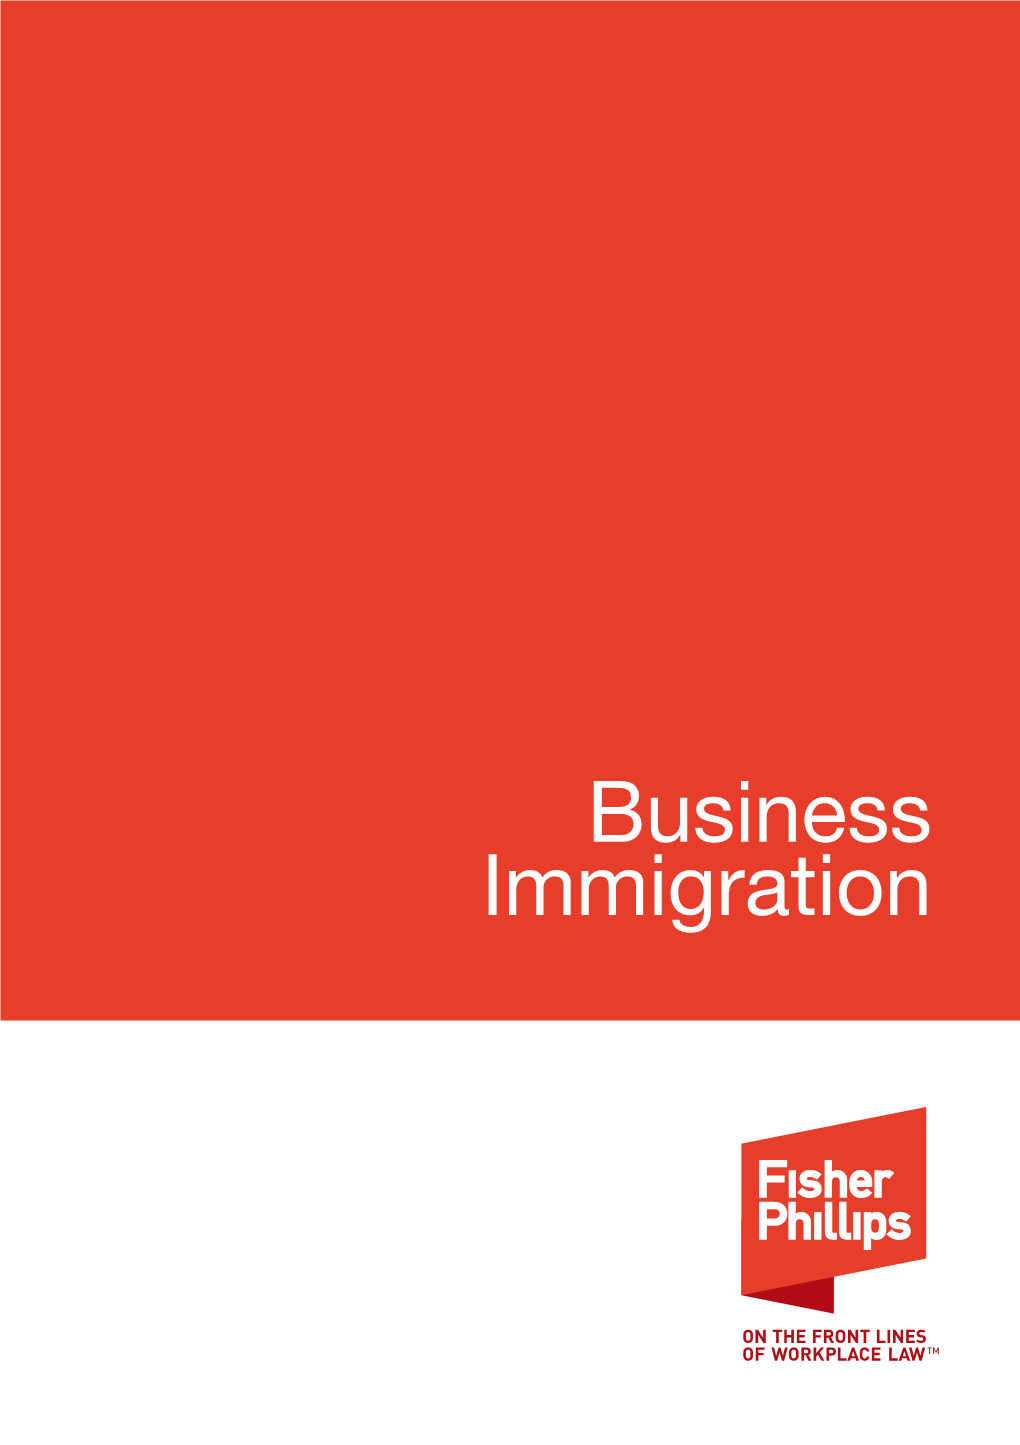 Business Immigration BUSINESS IMMIGRATION